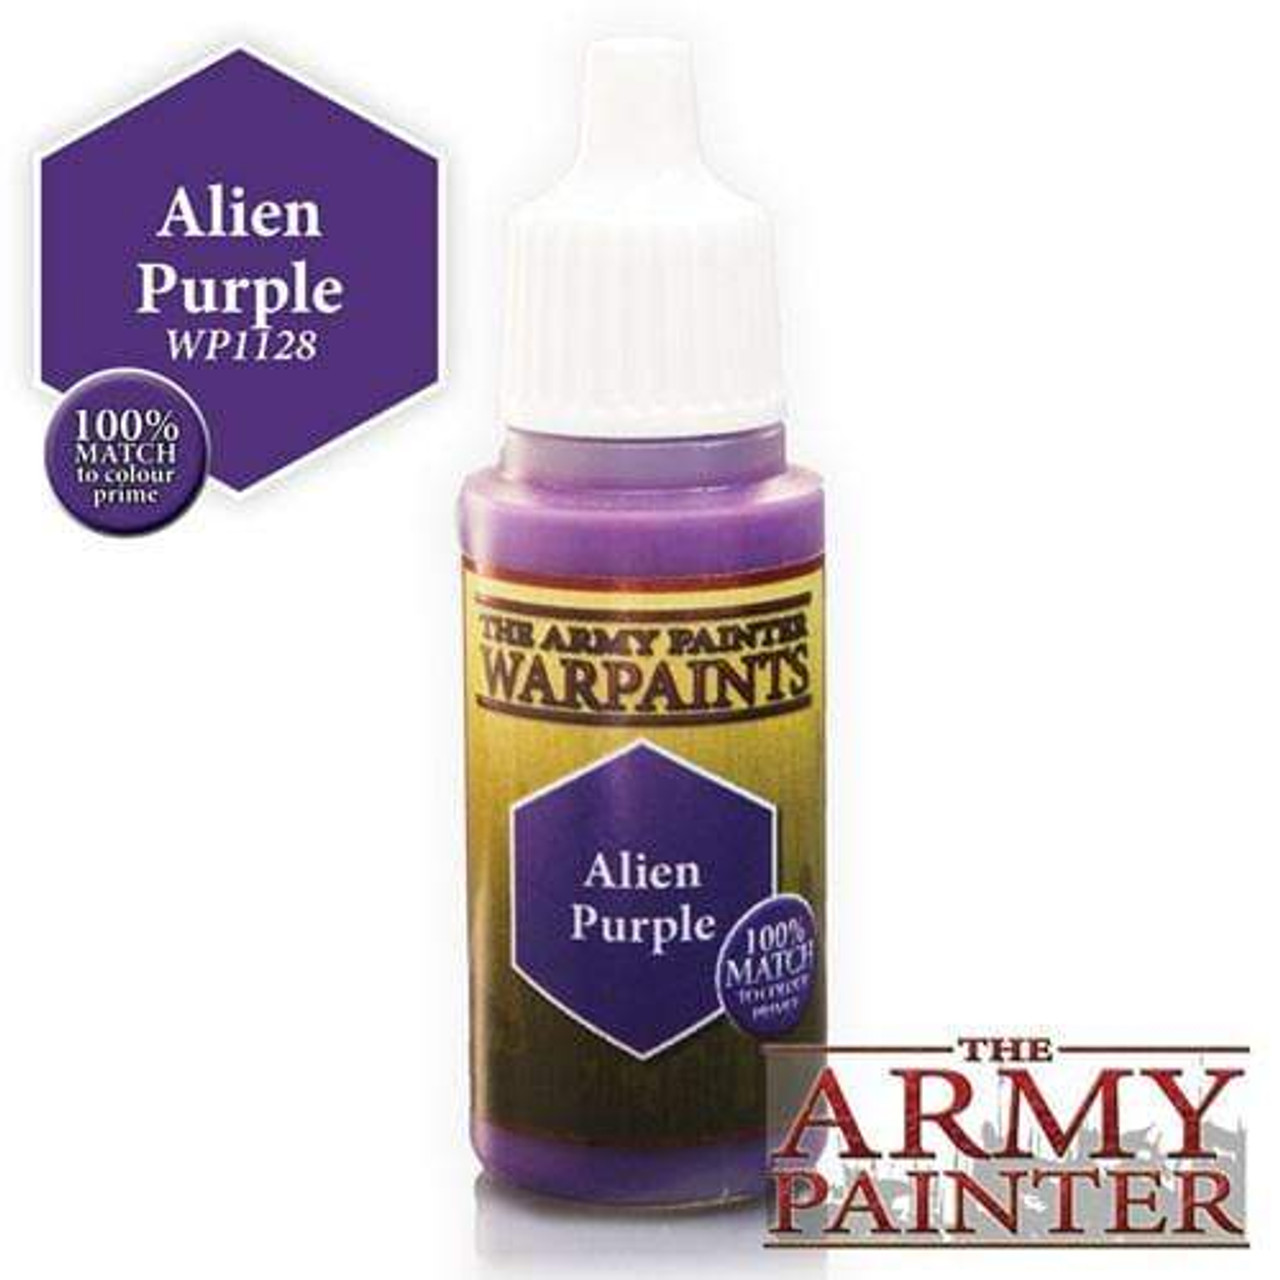 Army Painter Warpaint - Alien Purple